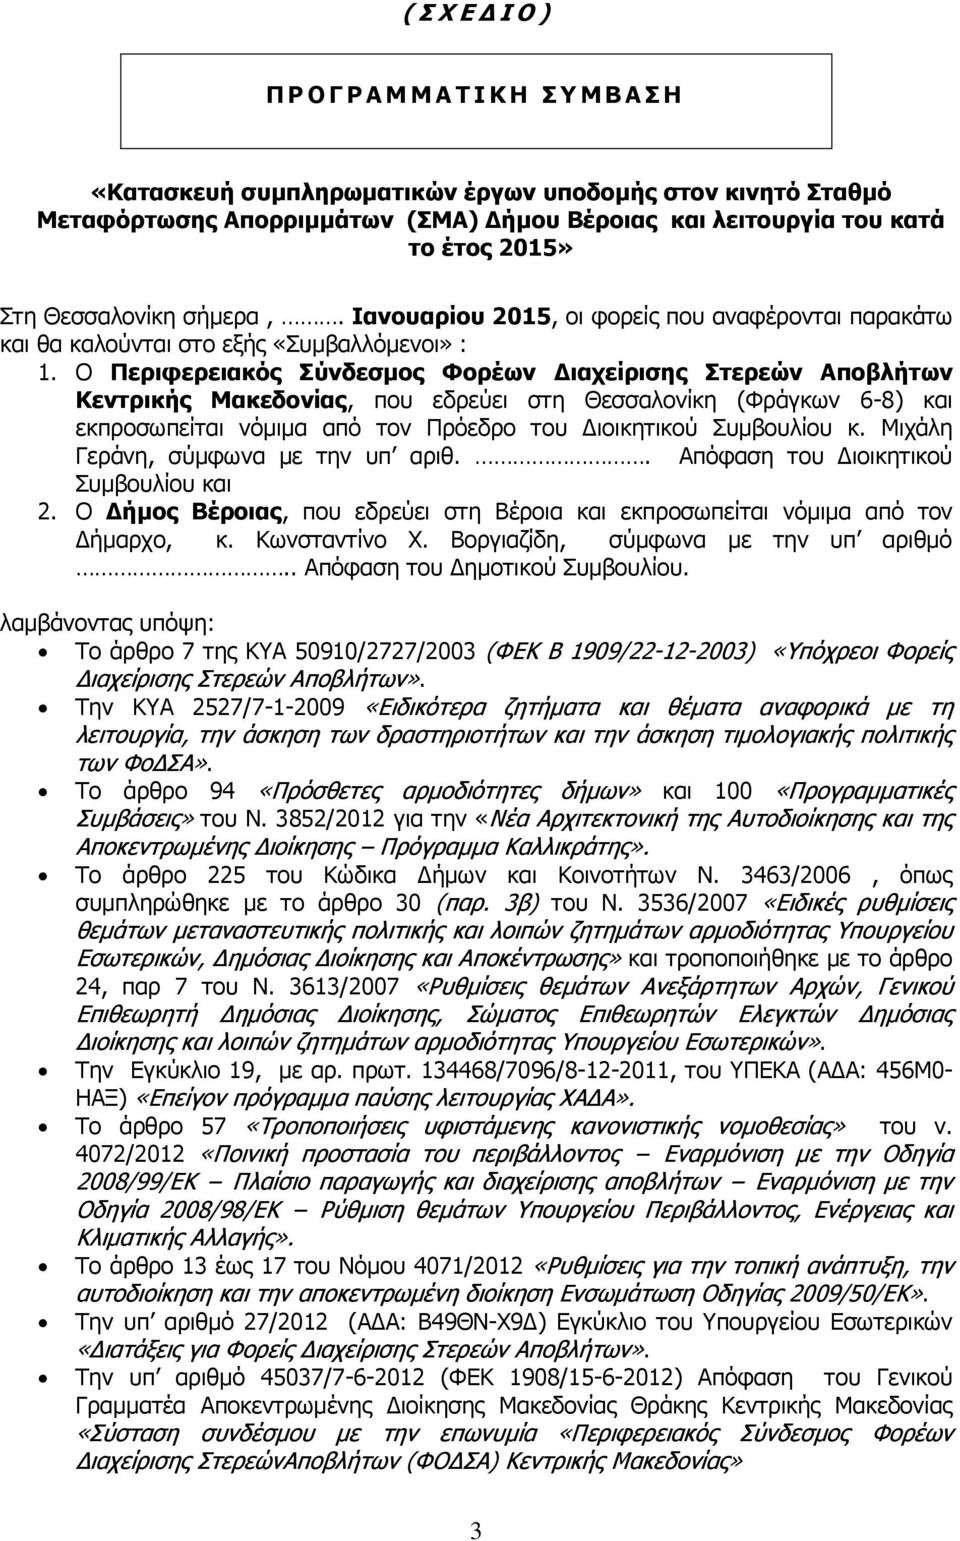 Ο Περιφερειακός Σύνδεσμος Φορέων Διαχείρισης Στερεών Αποβλήτων Κεντρικής Μακεδονίας, που εδρεύει στη Θεσσαλονίκη (Φράγκων 6-8) και εκπροσωπείται νόμιμα από τον Πρόεδρο του Διοικητικού Συμβουλίου κ.